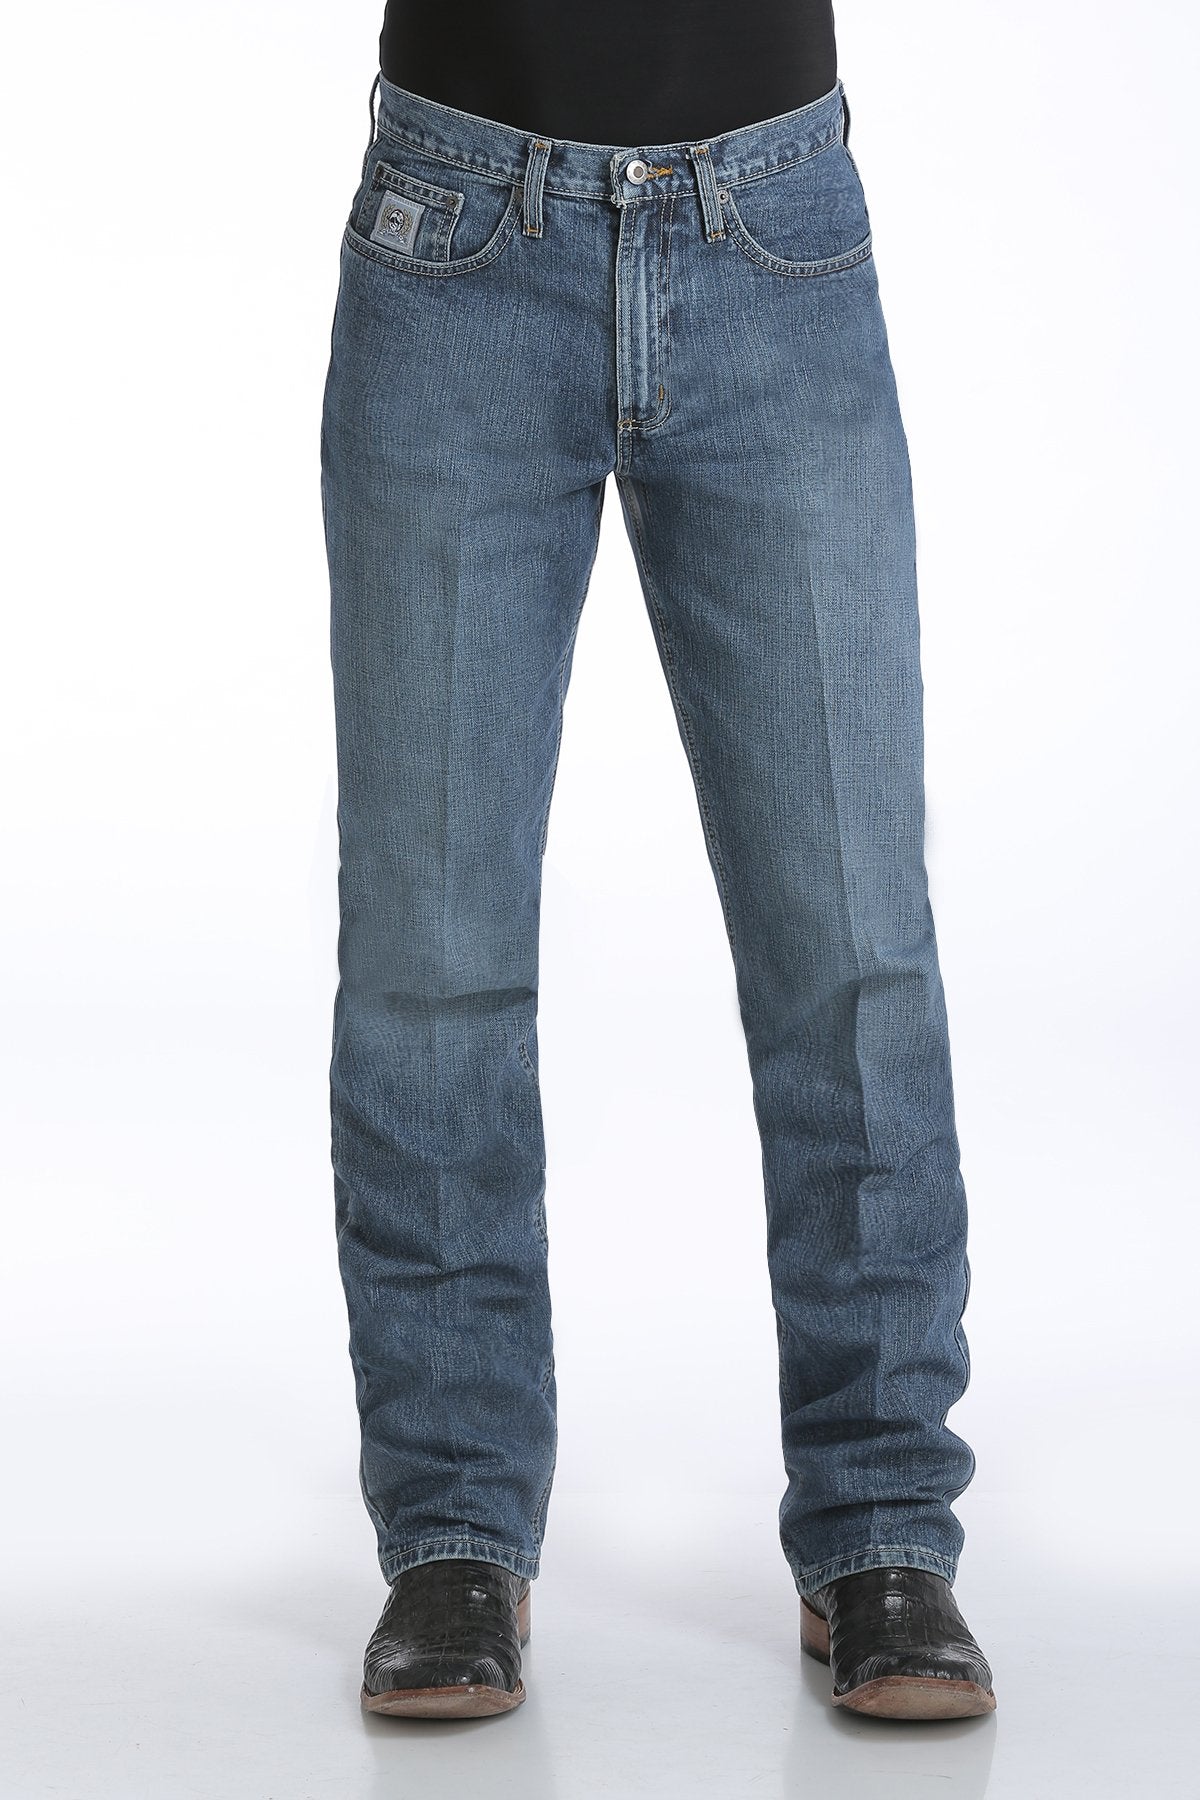 Cinch Mens Silver Label Slim Fit Jeans 38 Inch Leg (Medium Stonewash)